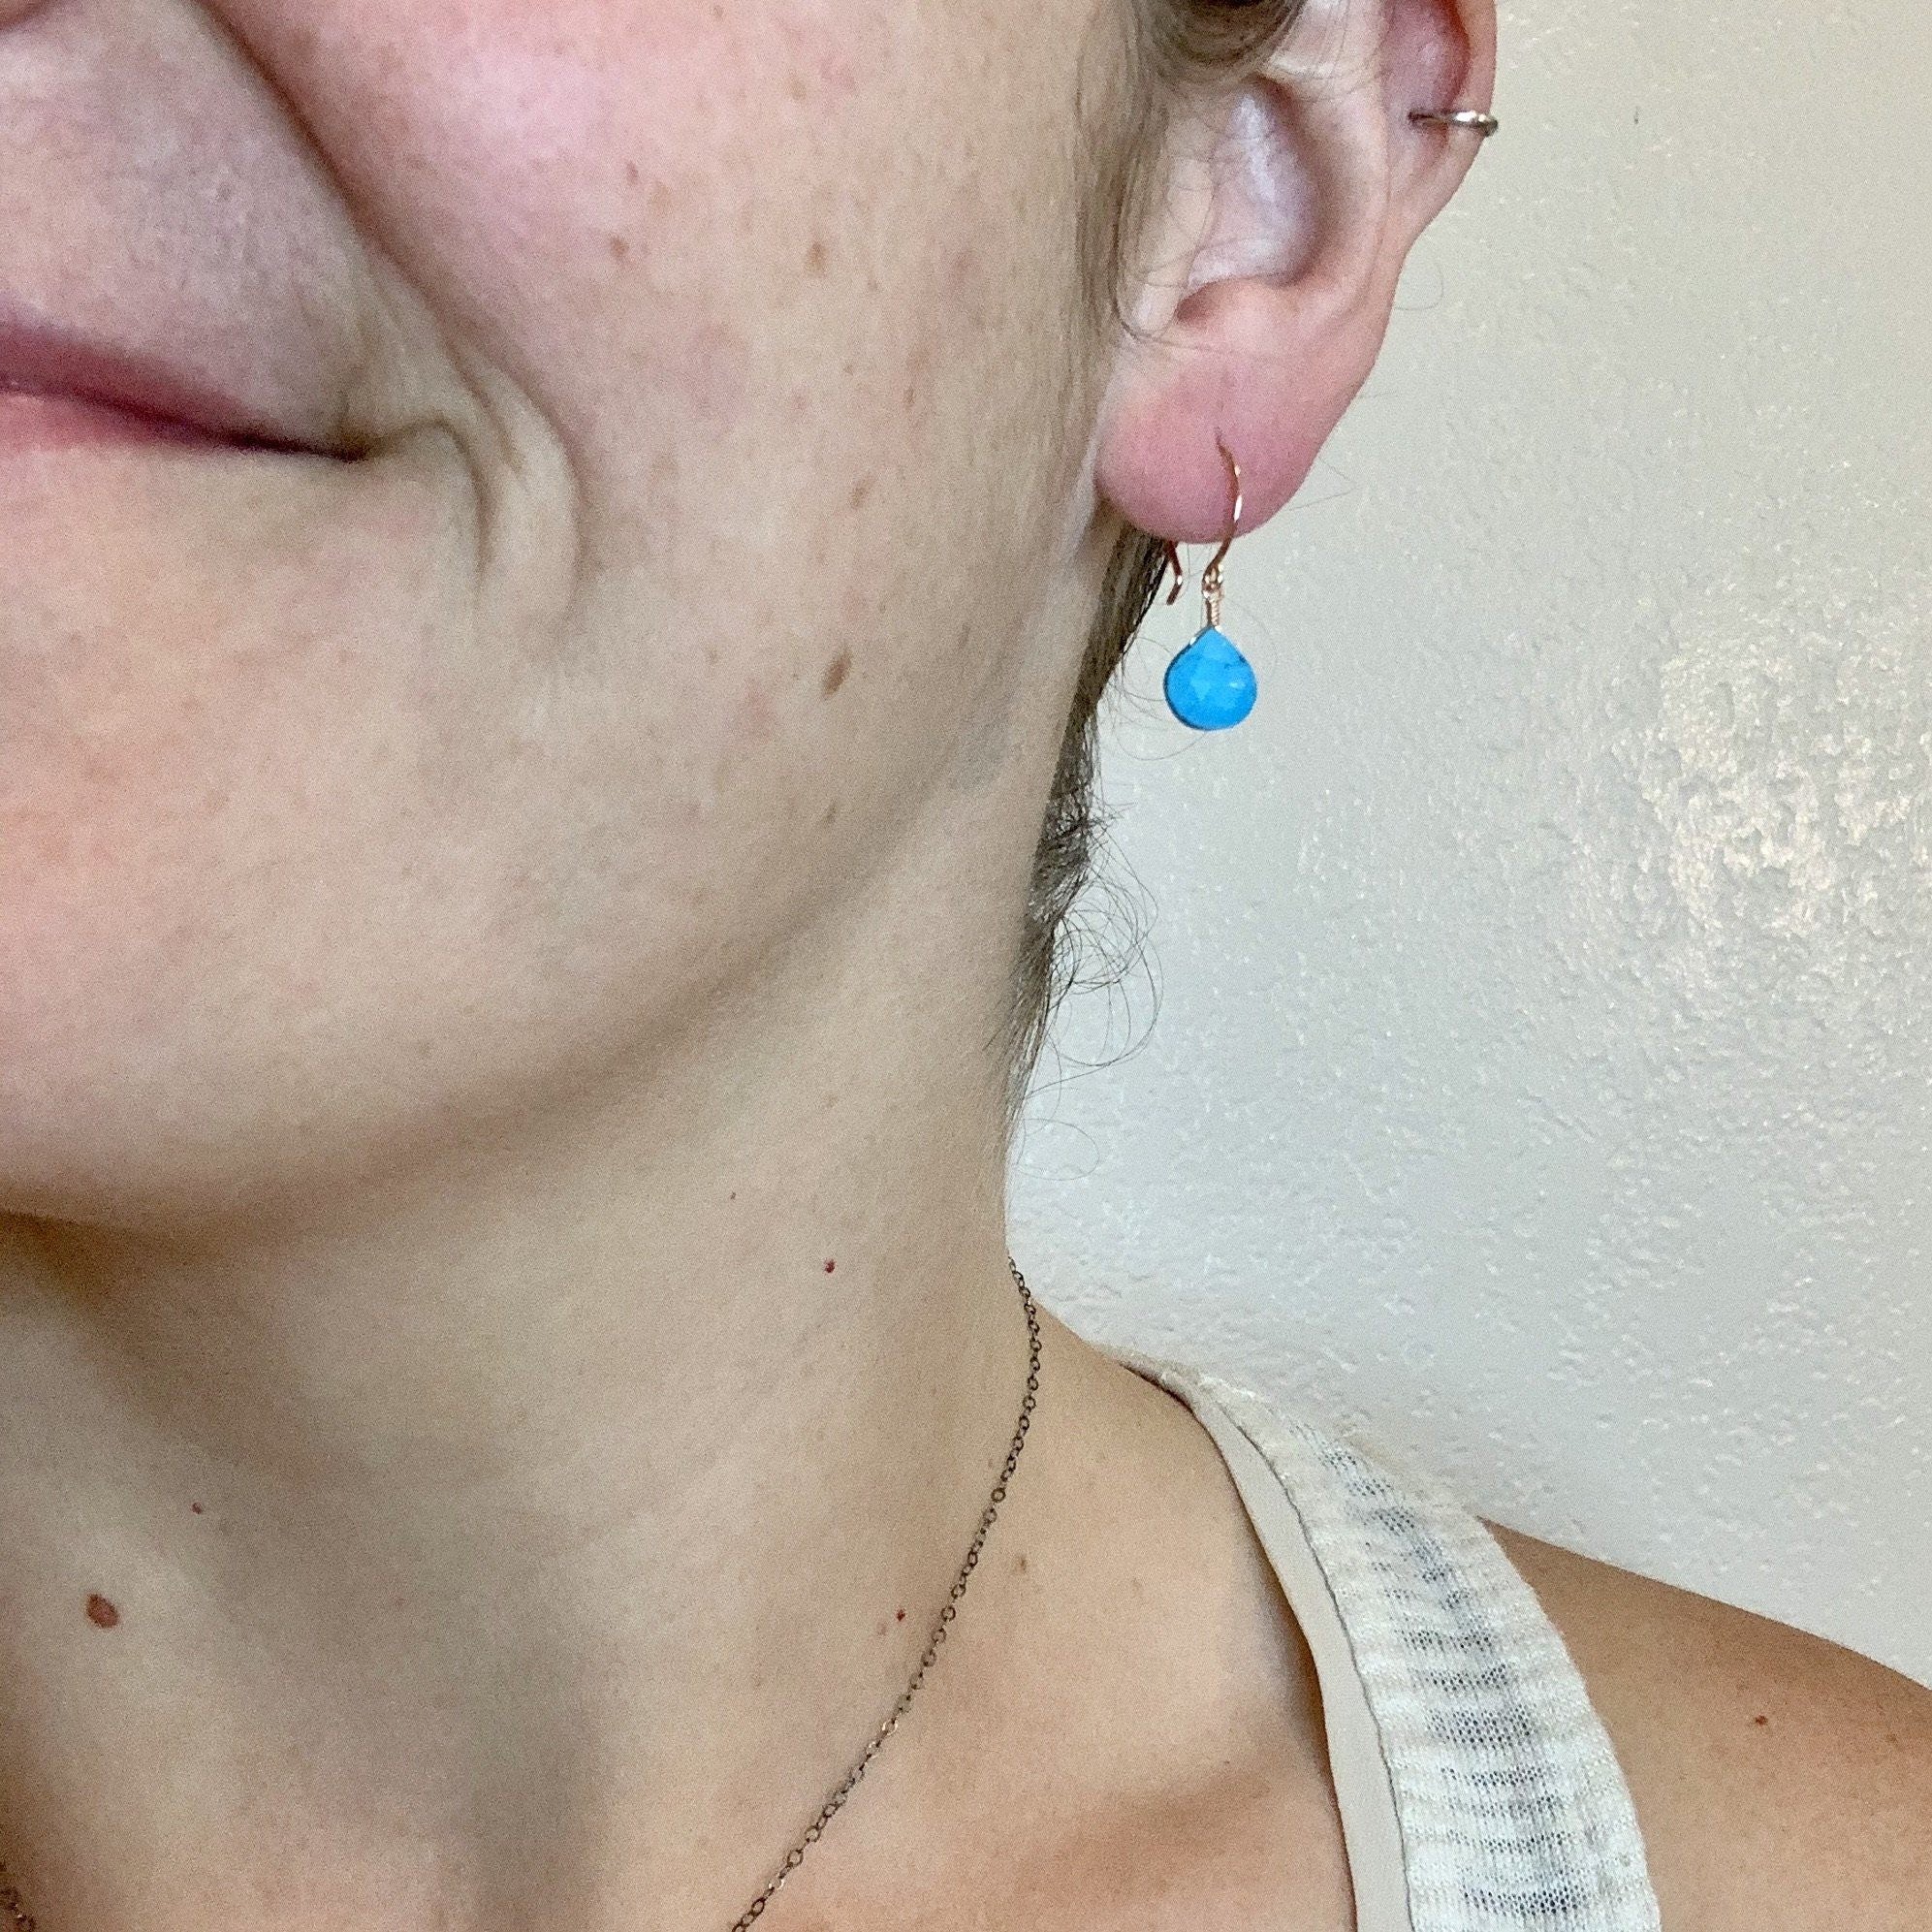 Cozumel Earrings - blue turquoise gemstone drop earrings - Foamy Wader